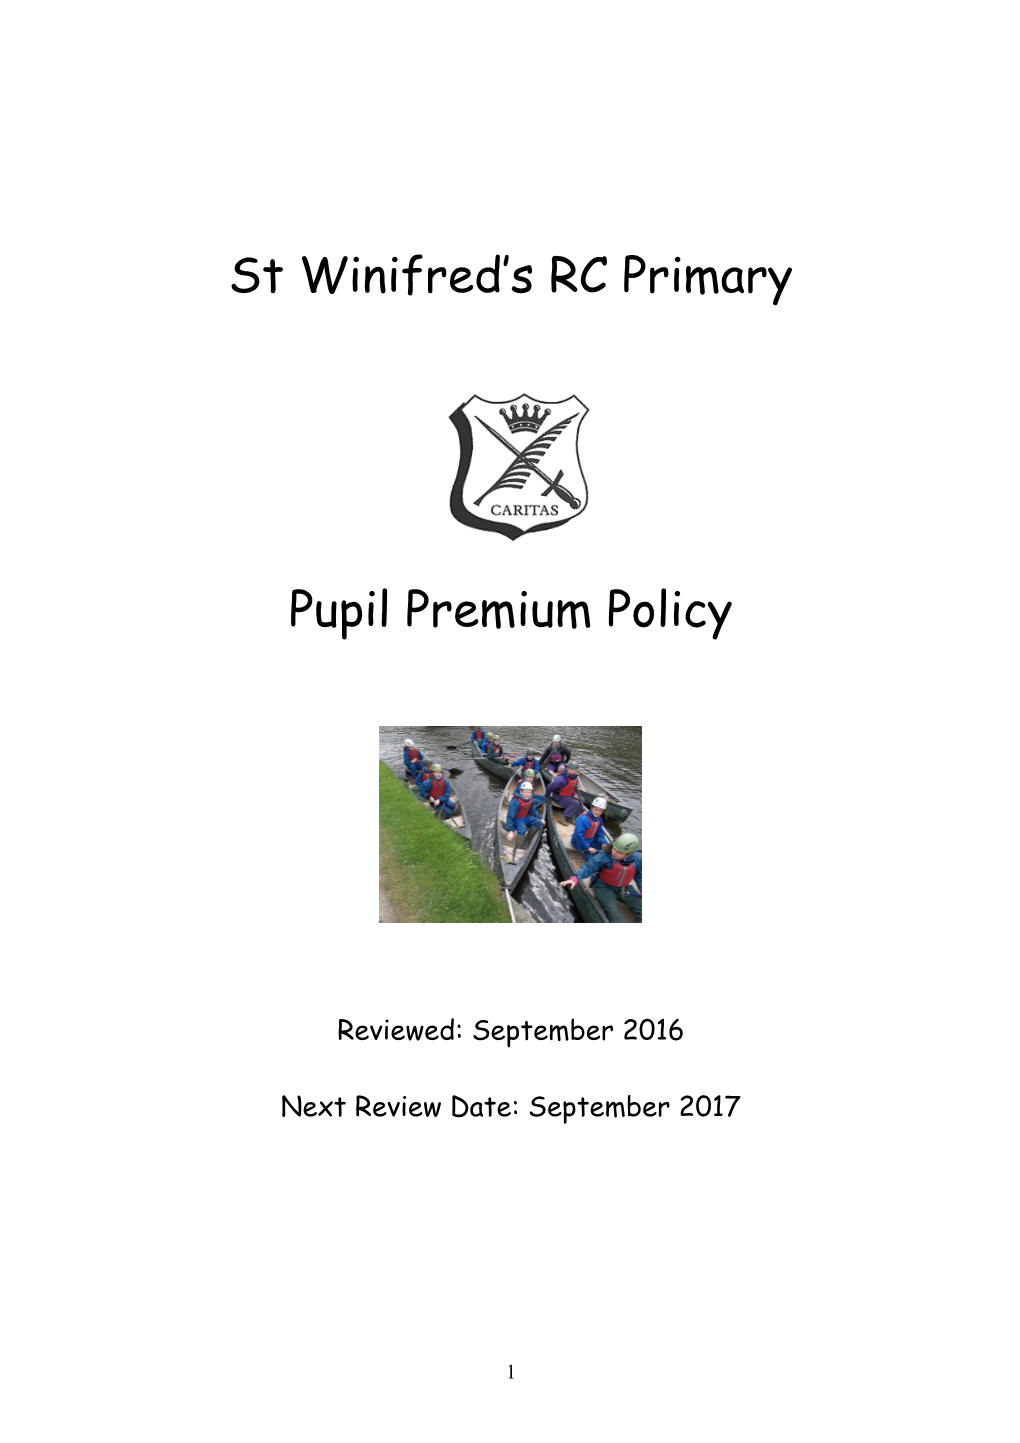 Pupil Premium Policy